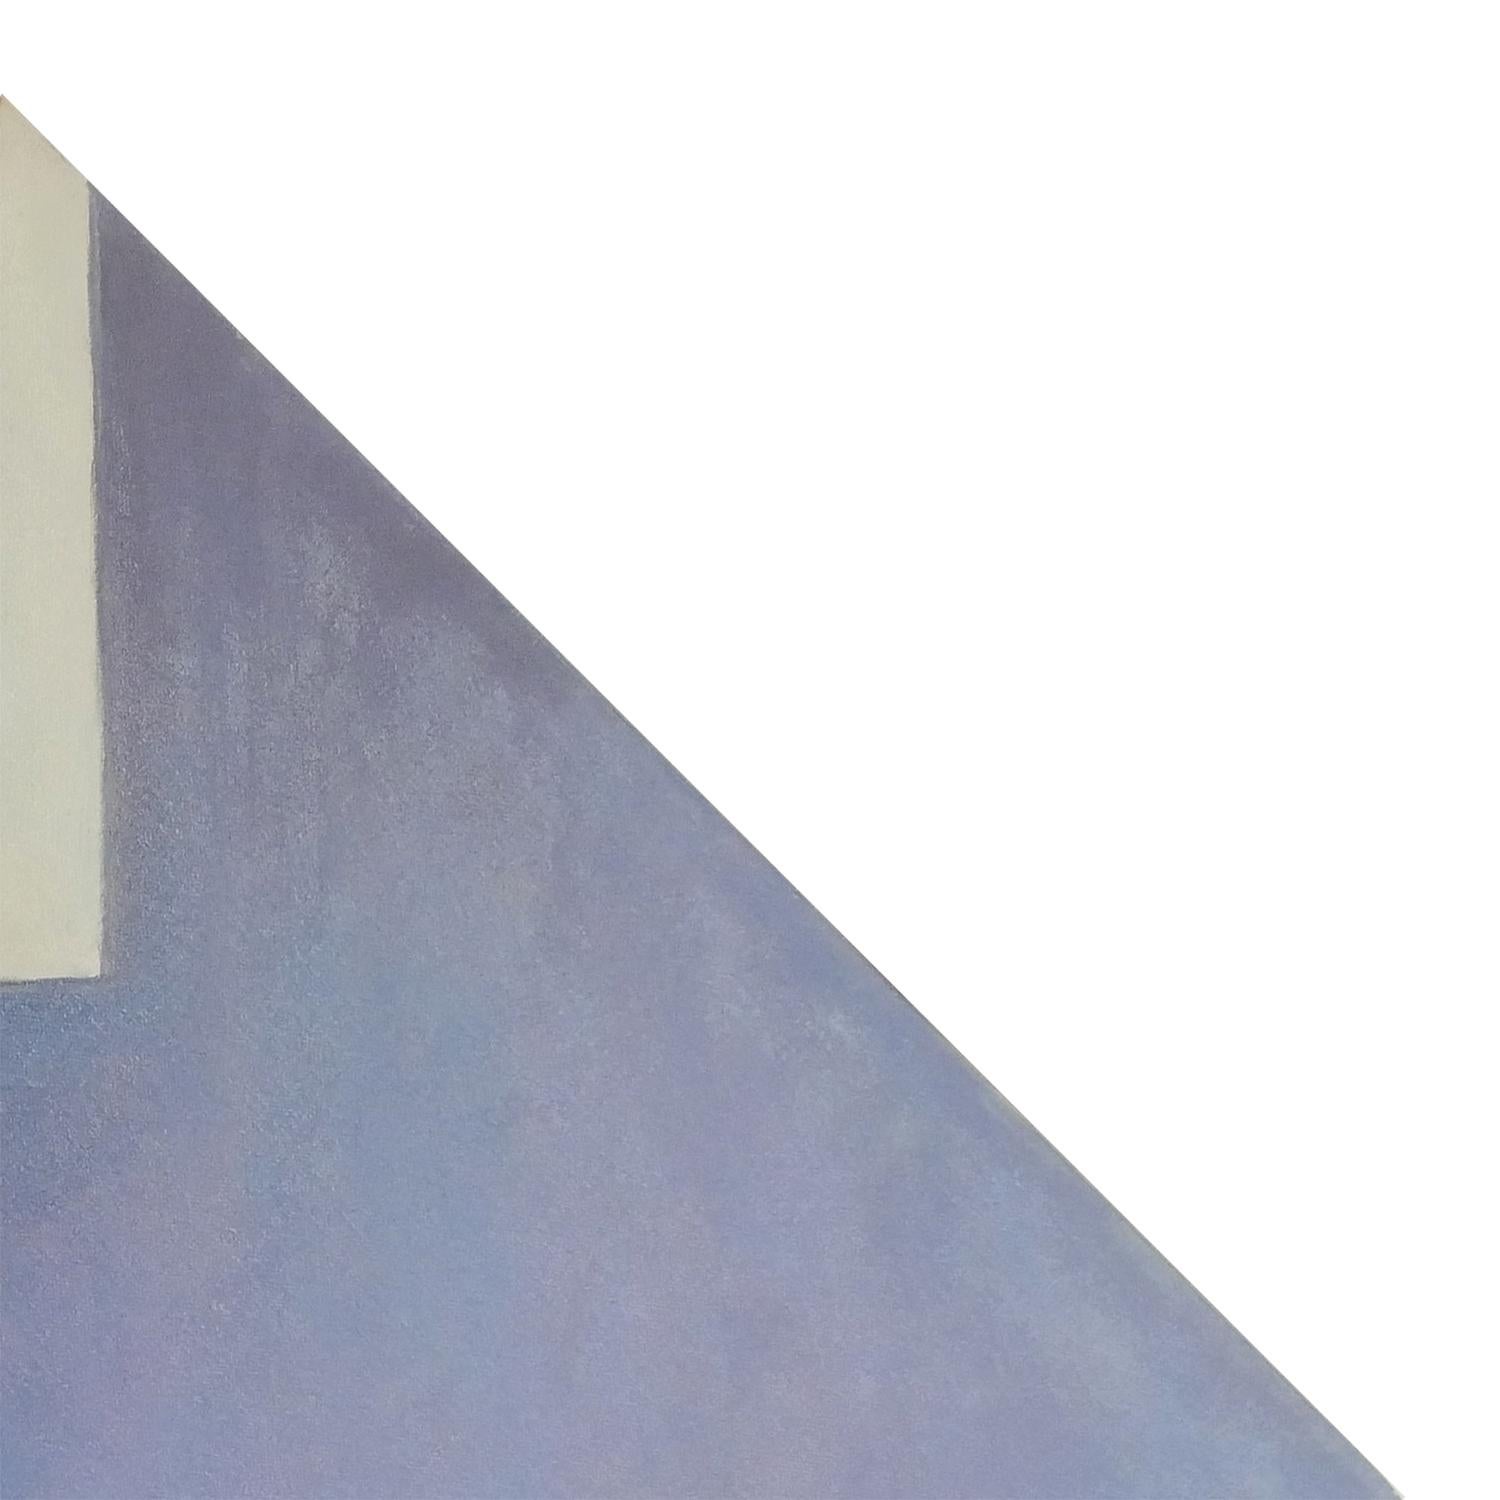 Peinture abstraite moderne de l'artiste Margaret Nobler de Houston, TX. L'œuvre présente une toile en forme de diamant de couleur grise avec des accents géométriques jaune clair. Signé par l'artiste au dos. Actuellement non encadré, mais des options